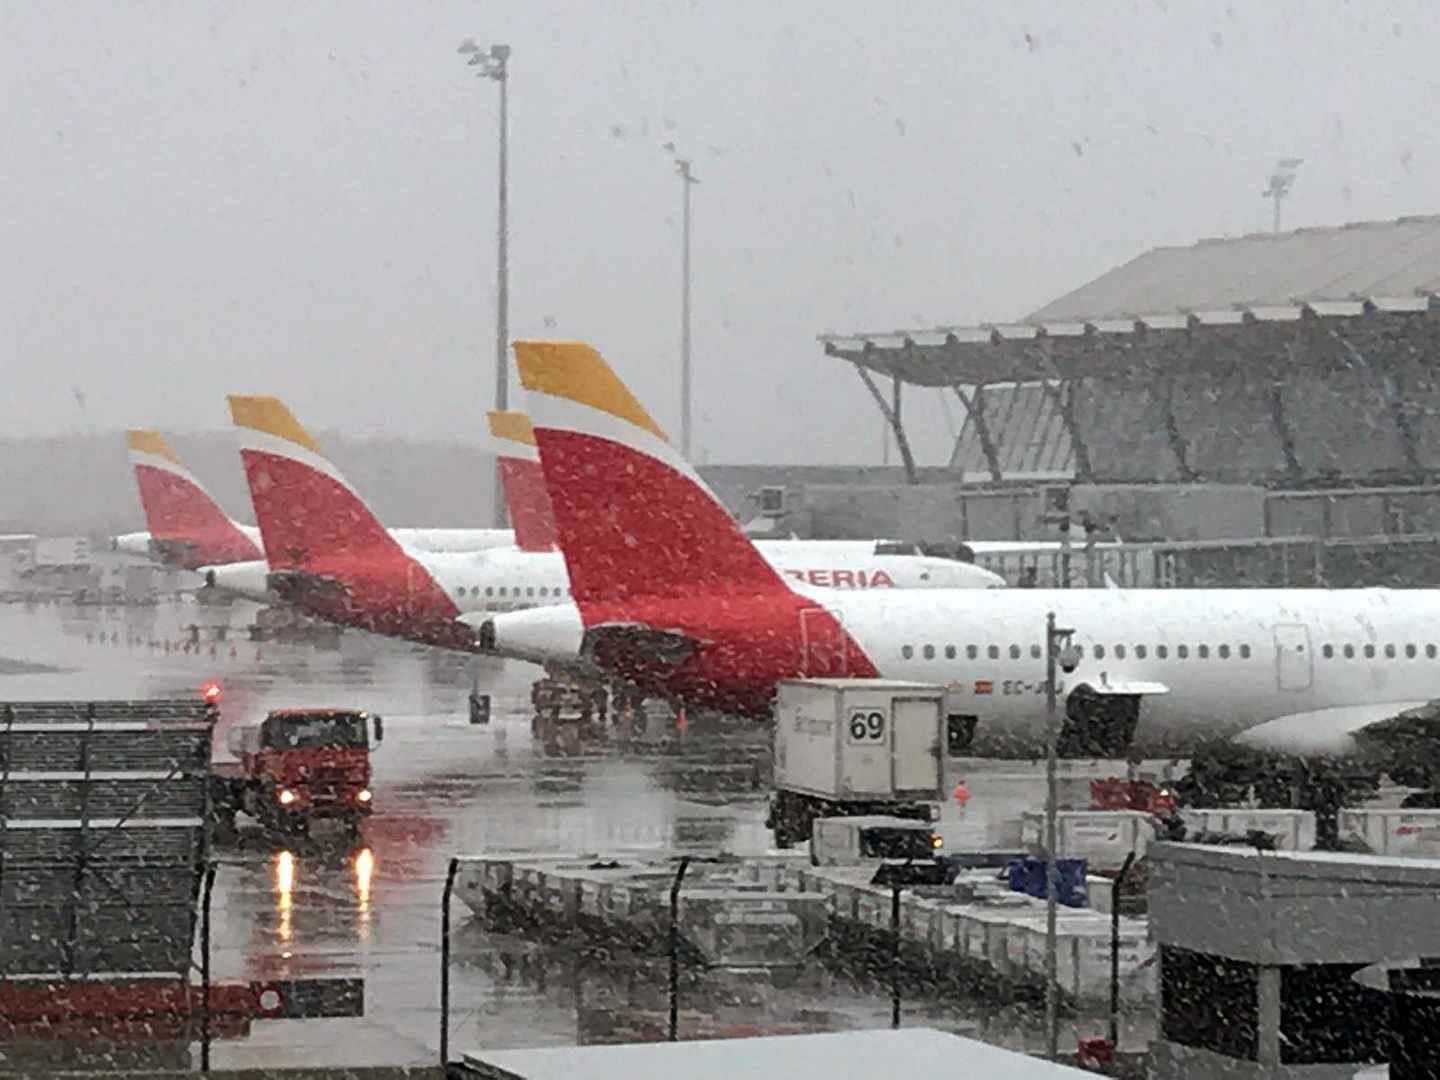 Fotografía facilitada por Iberia del aeropuerto Adolfo Suárez Madrid-Barajas bajo la nevada.